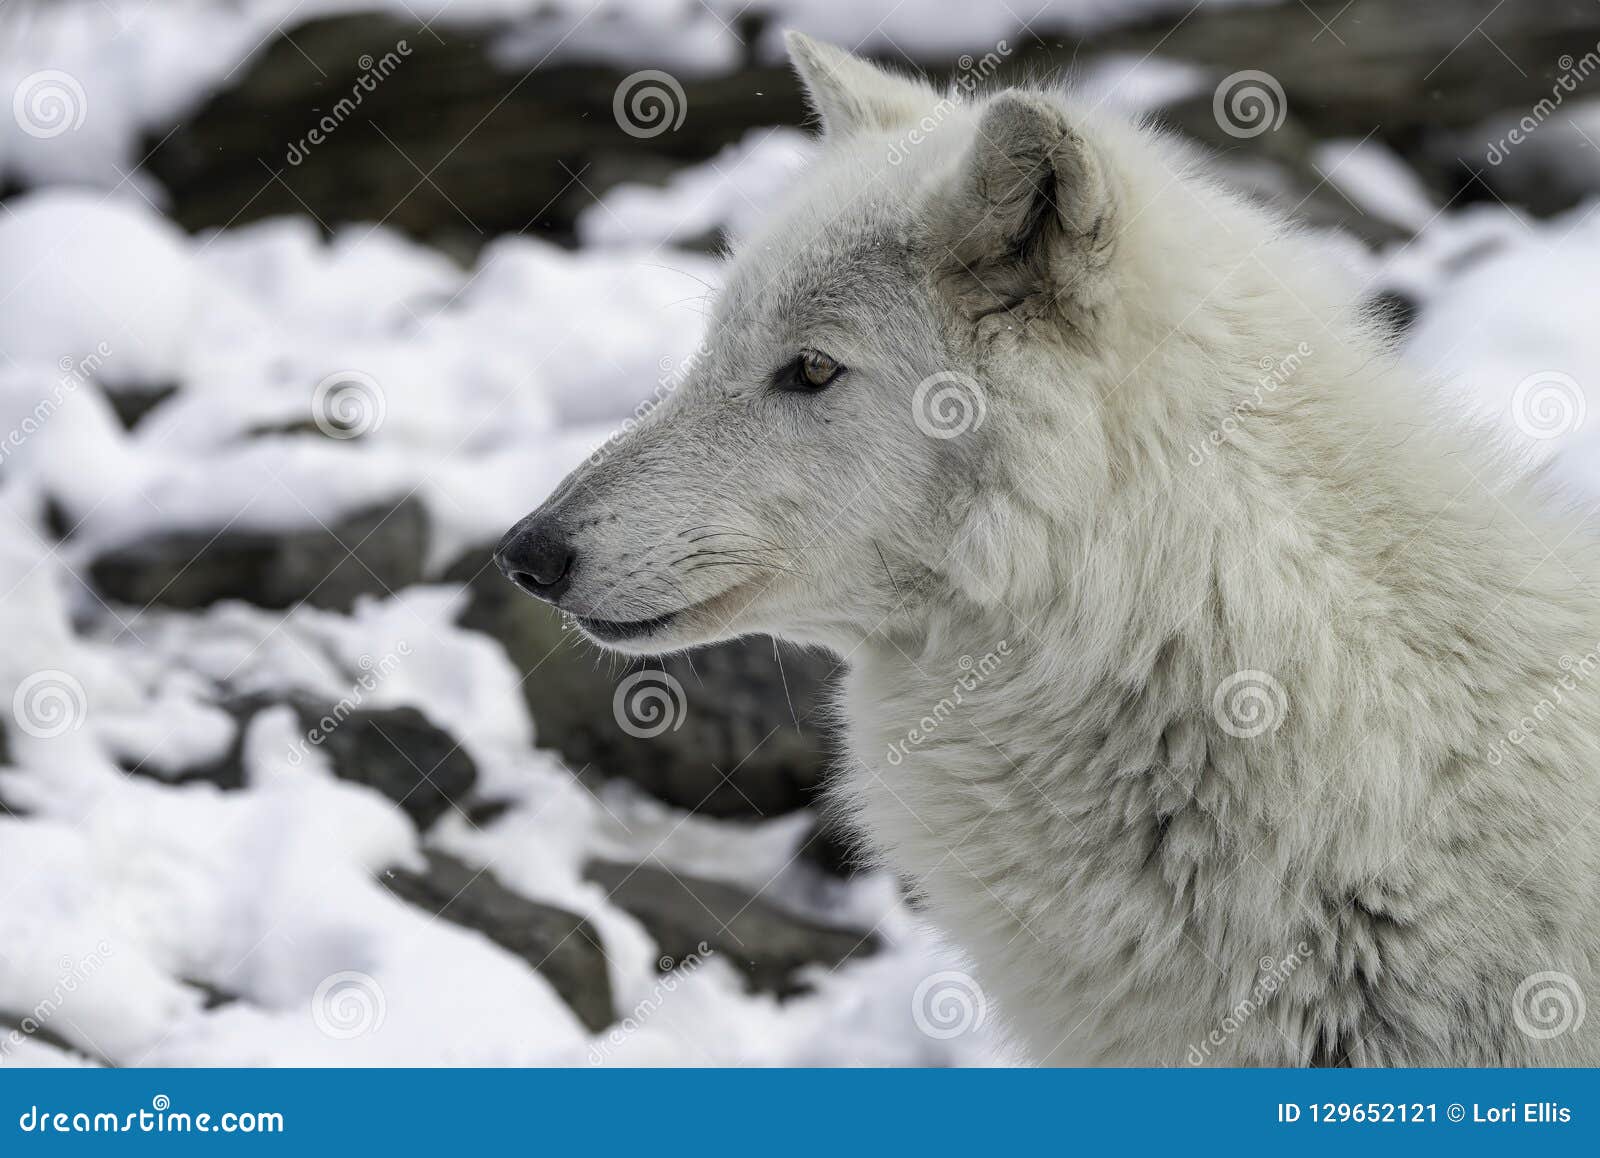 北美灰狼 库存图片. 图片 包括有 木材, 环境, 关闭, 自然, 哺乳动物, 猎人, 生态系, 野生生物 - 28671827